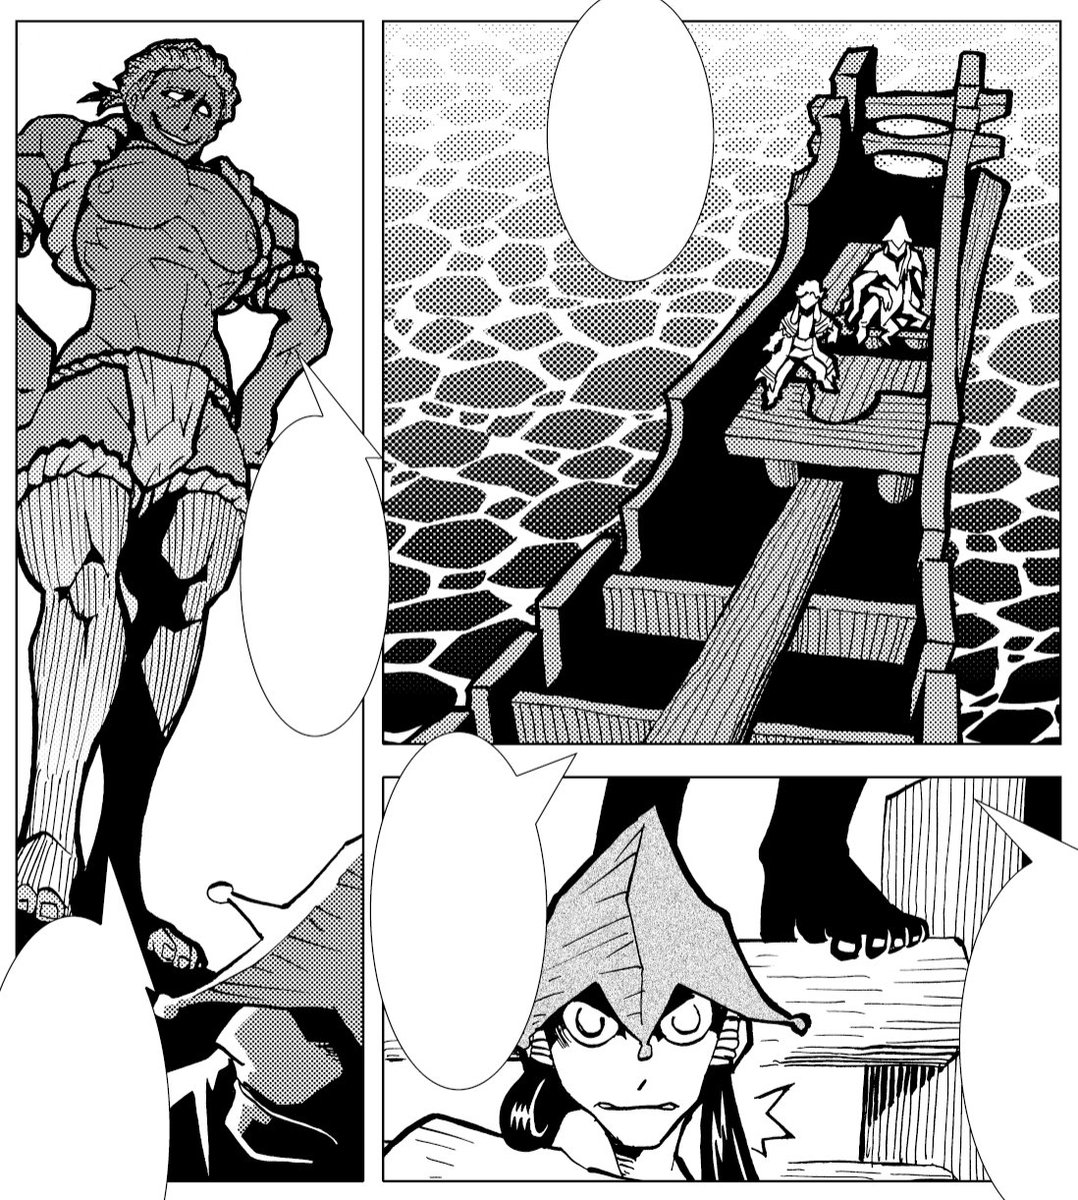 古墳時代変身ヒーロー漫画『カムヤライド』最新話掲載の「コミック乱ツインズ」発売中です。今回の戦いの舞台は海上です! 